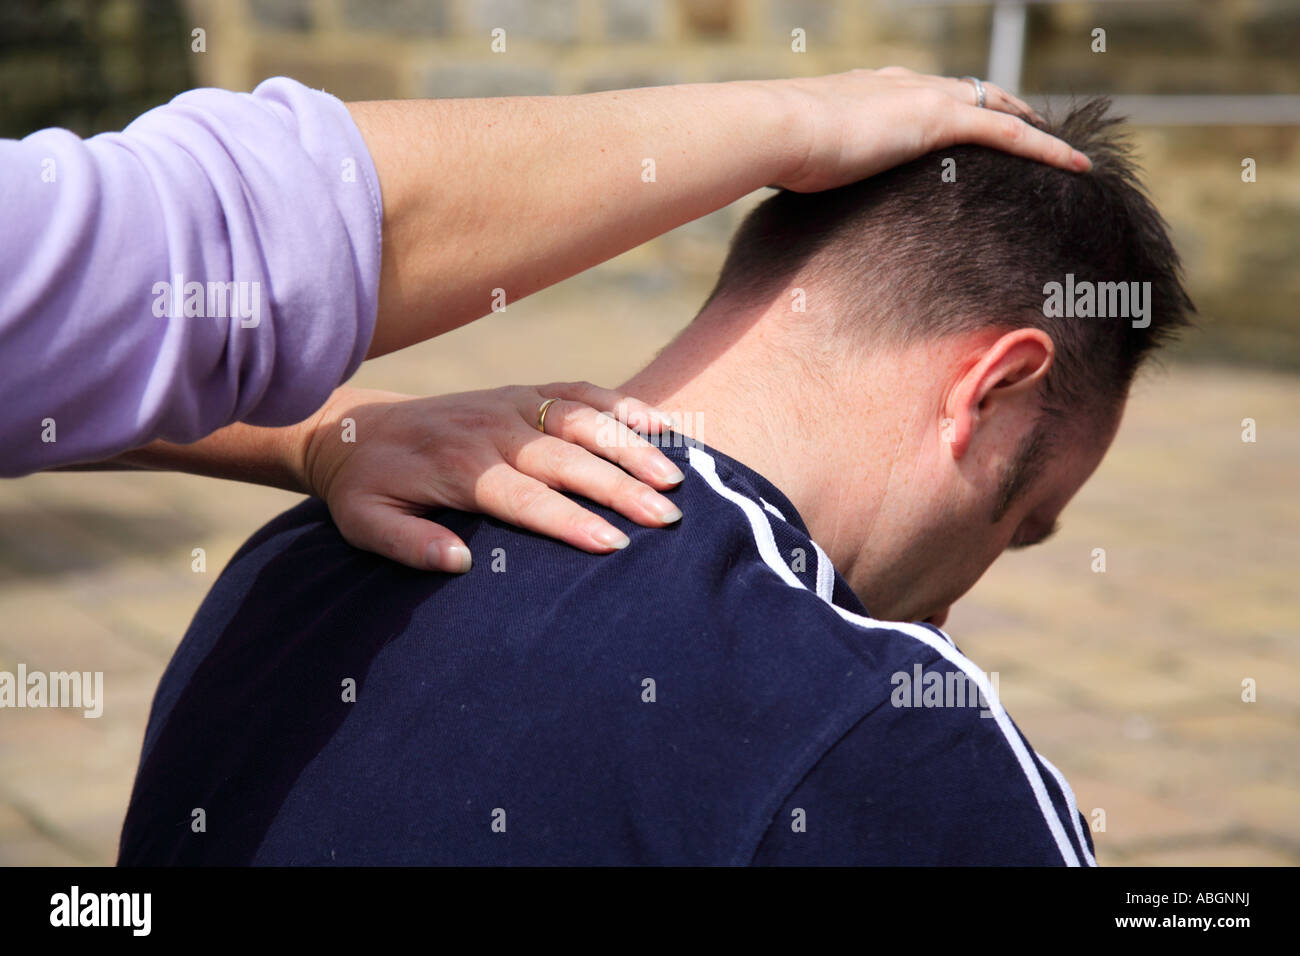 Estirar el cuello como parte de un masaje corporal tailandés Foto de stock